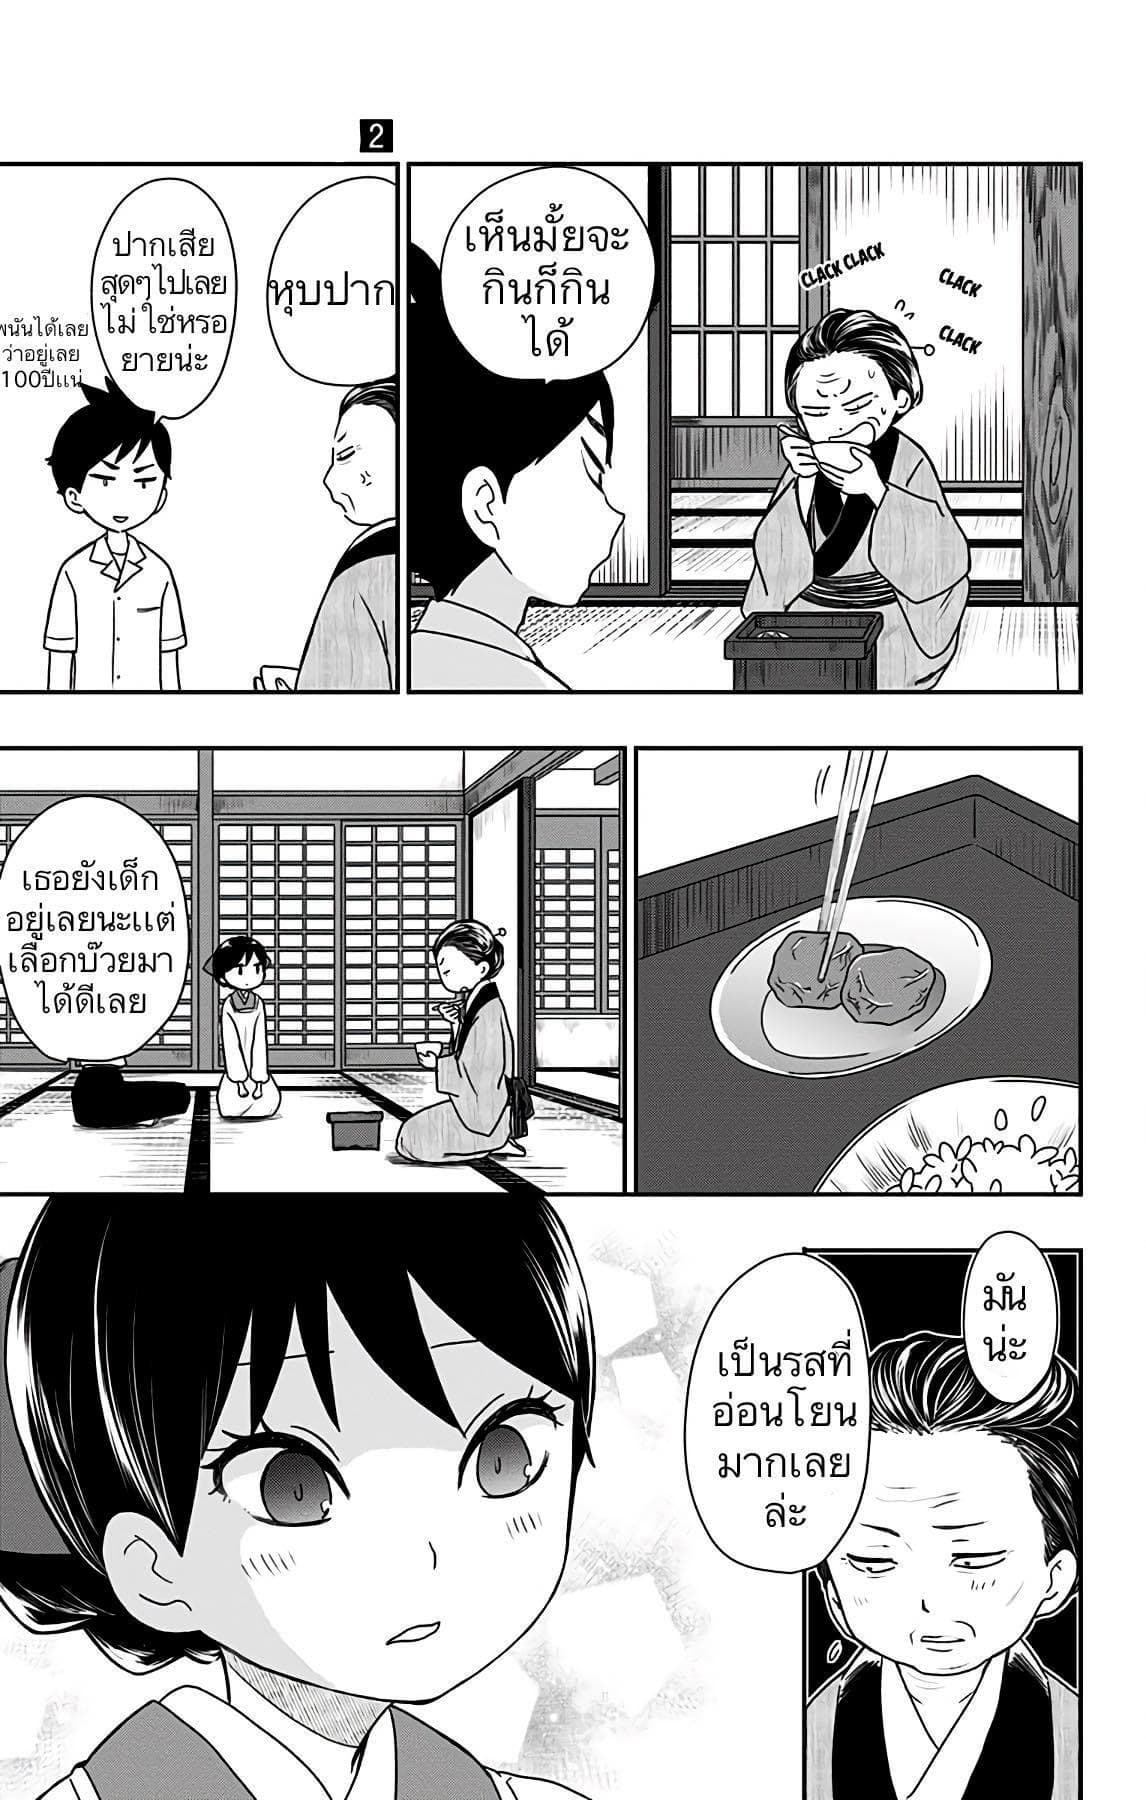 Shouwa Otome Otogibanashi เรื่องเล่าของสาวน้อย ยุคโชวะ ตอนที่ 8 (13)